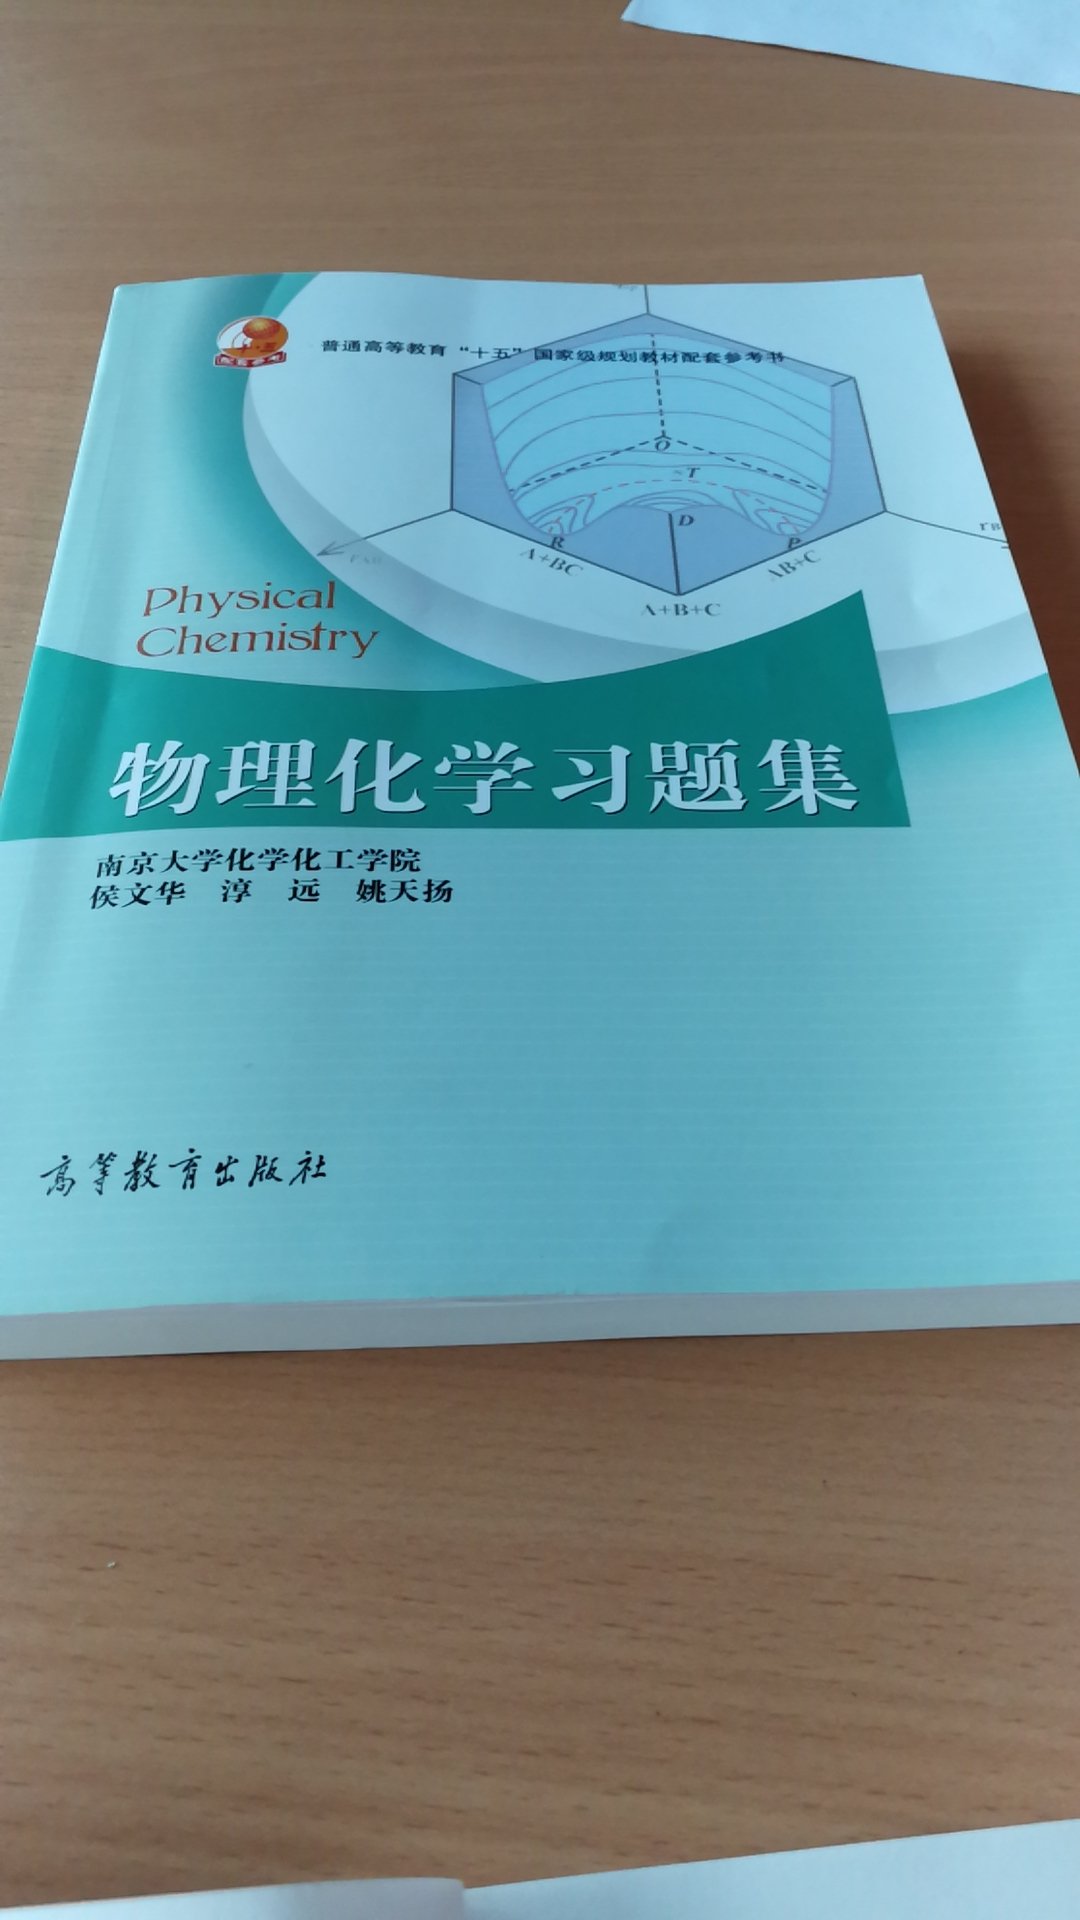 很不错，买来就是配套物理化学书的，希望能学好物理化学